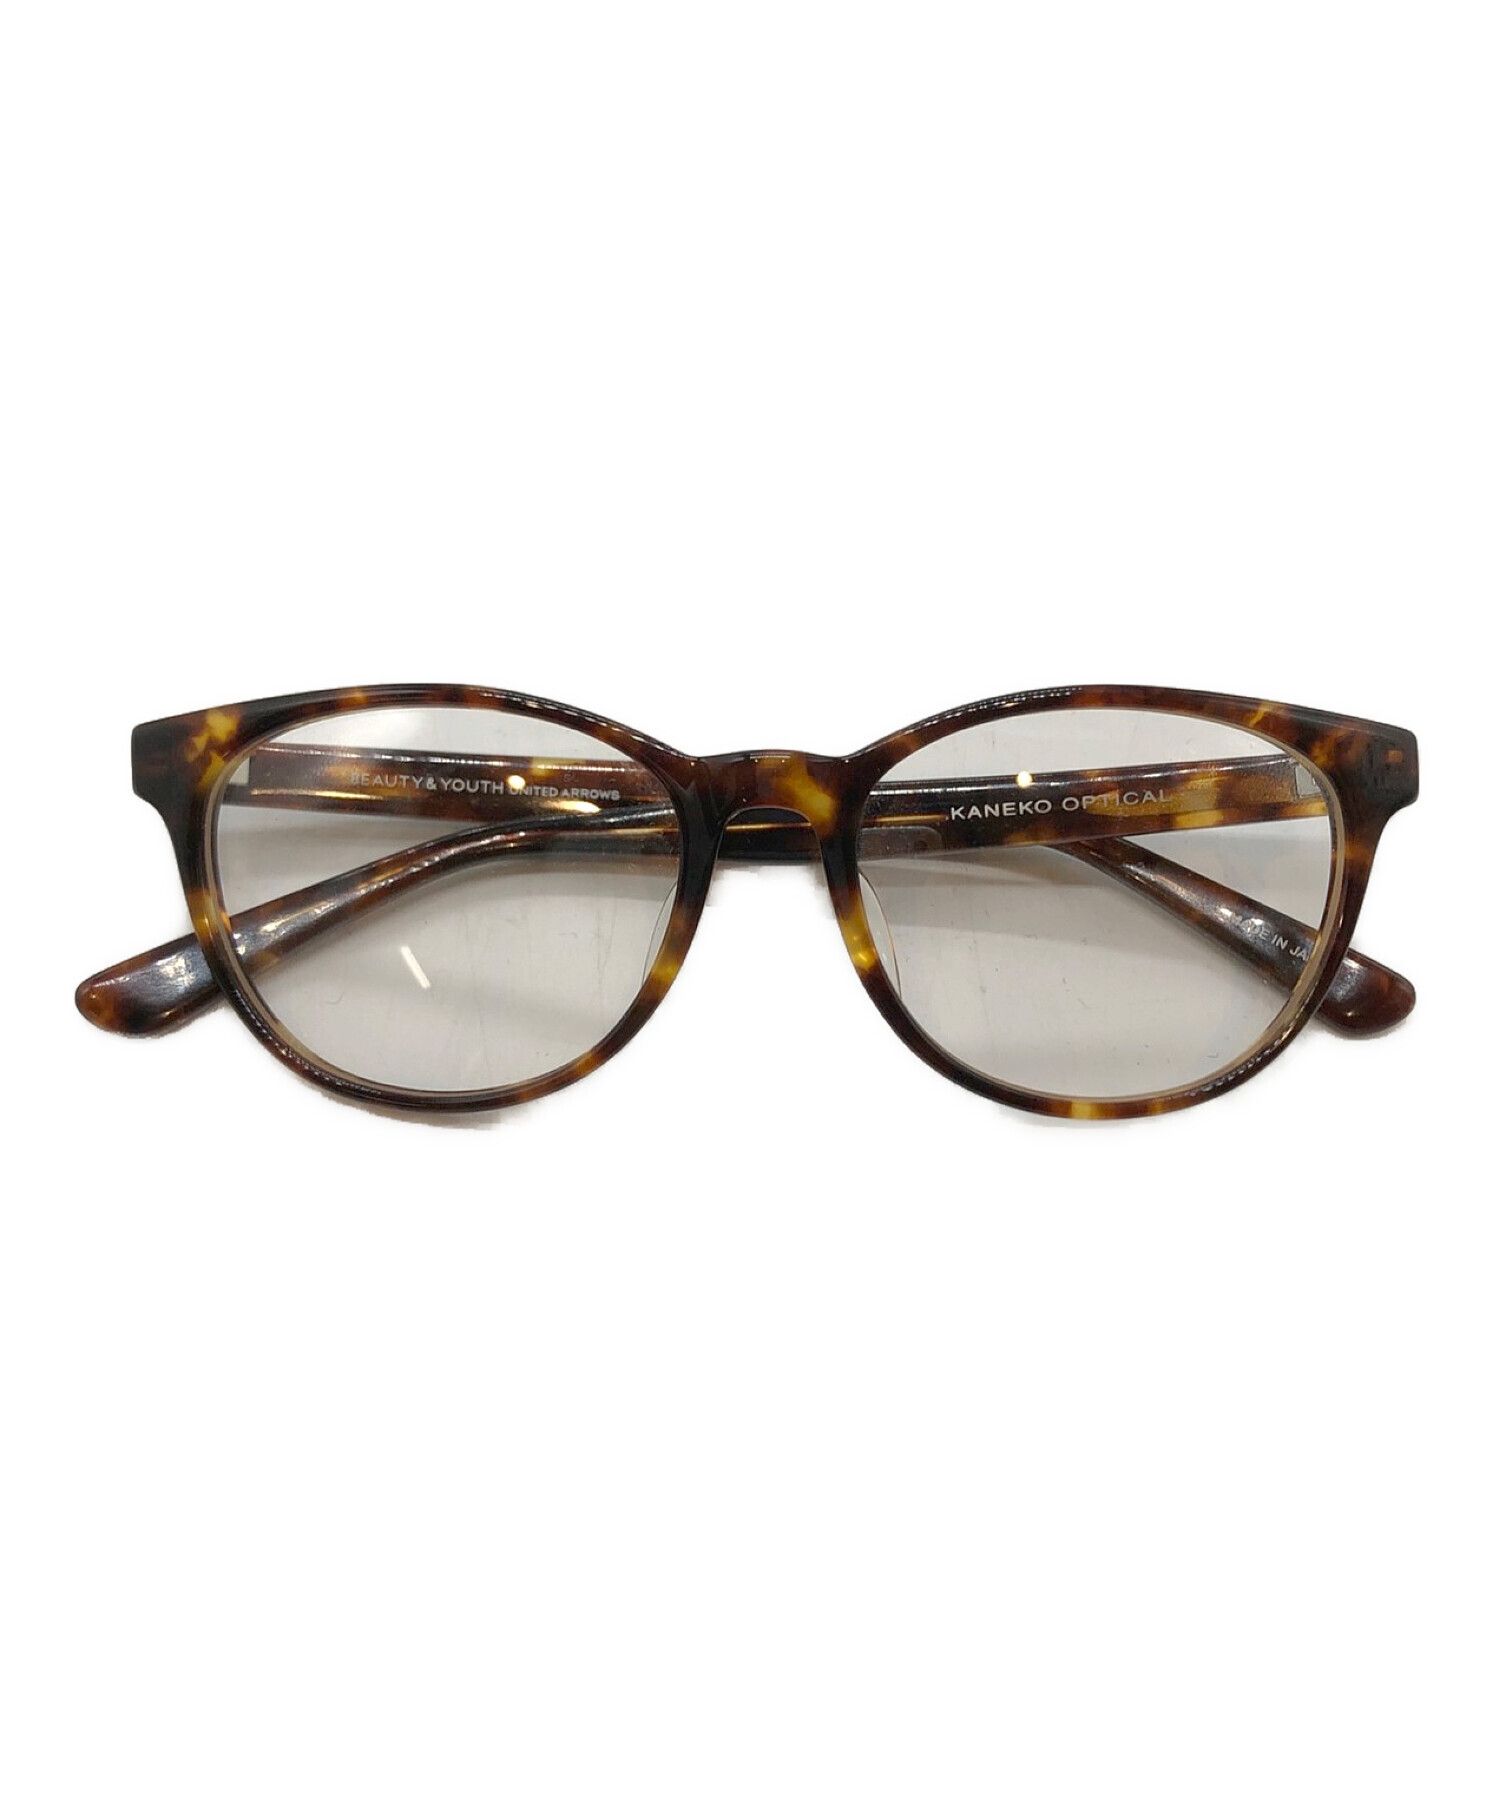 金子眼鏡 (カネコメガネ) BEAUTY&YOUTH (ビューティーアンドユース) 眼鏡